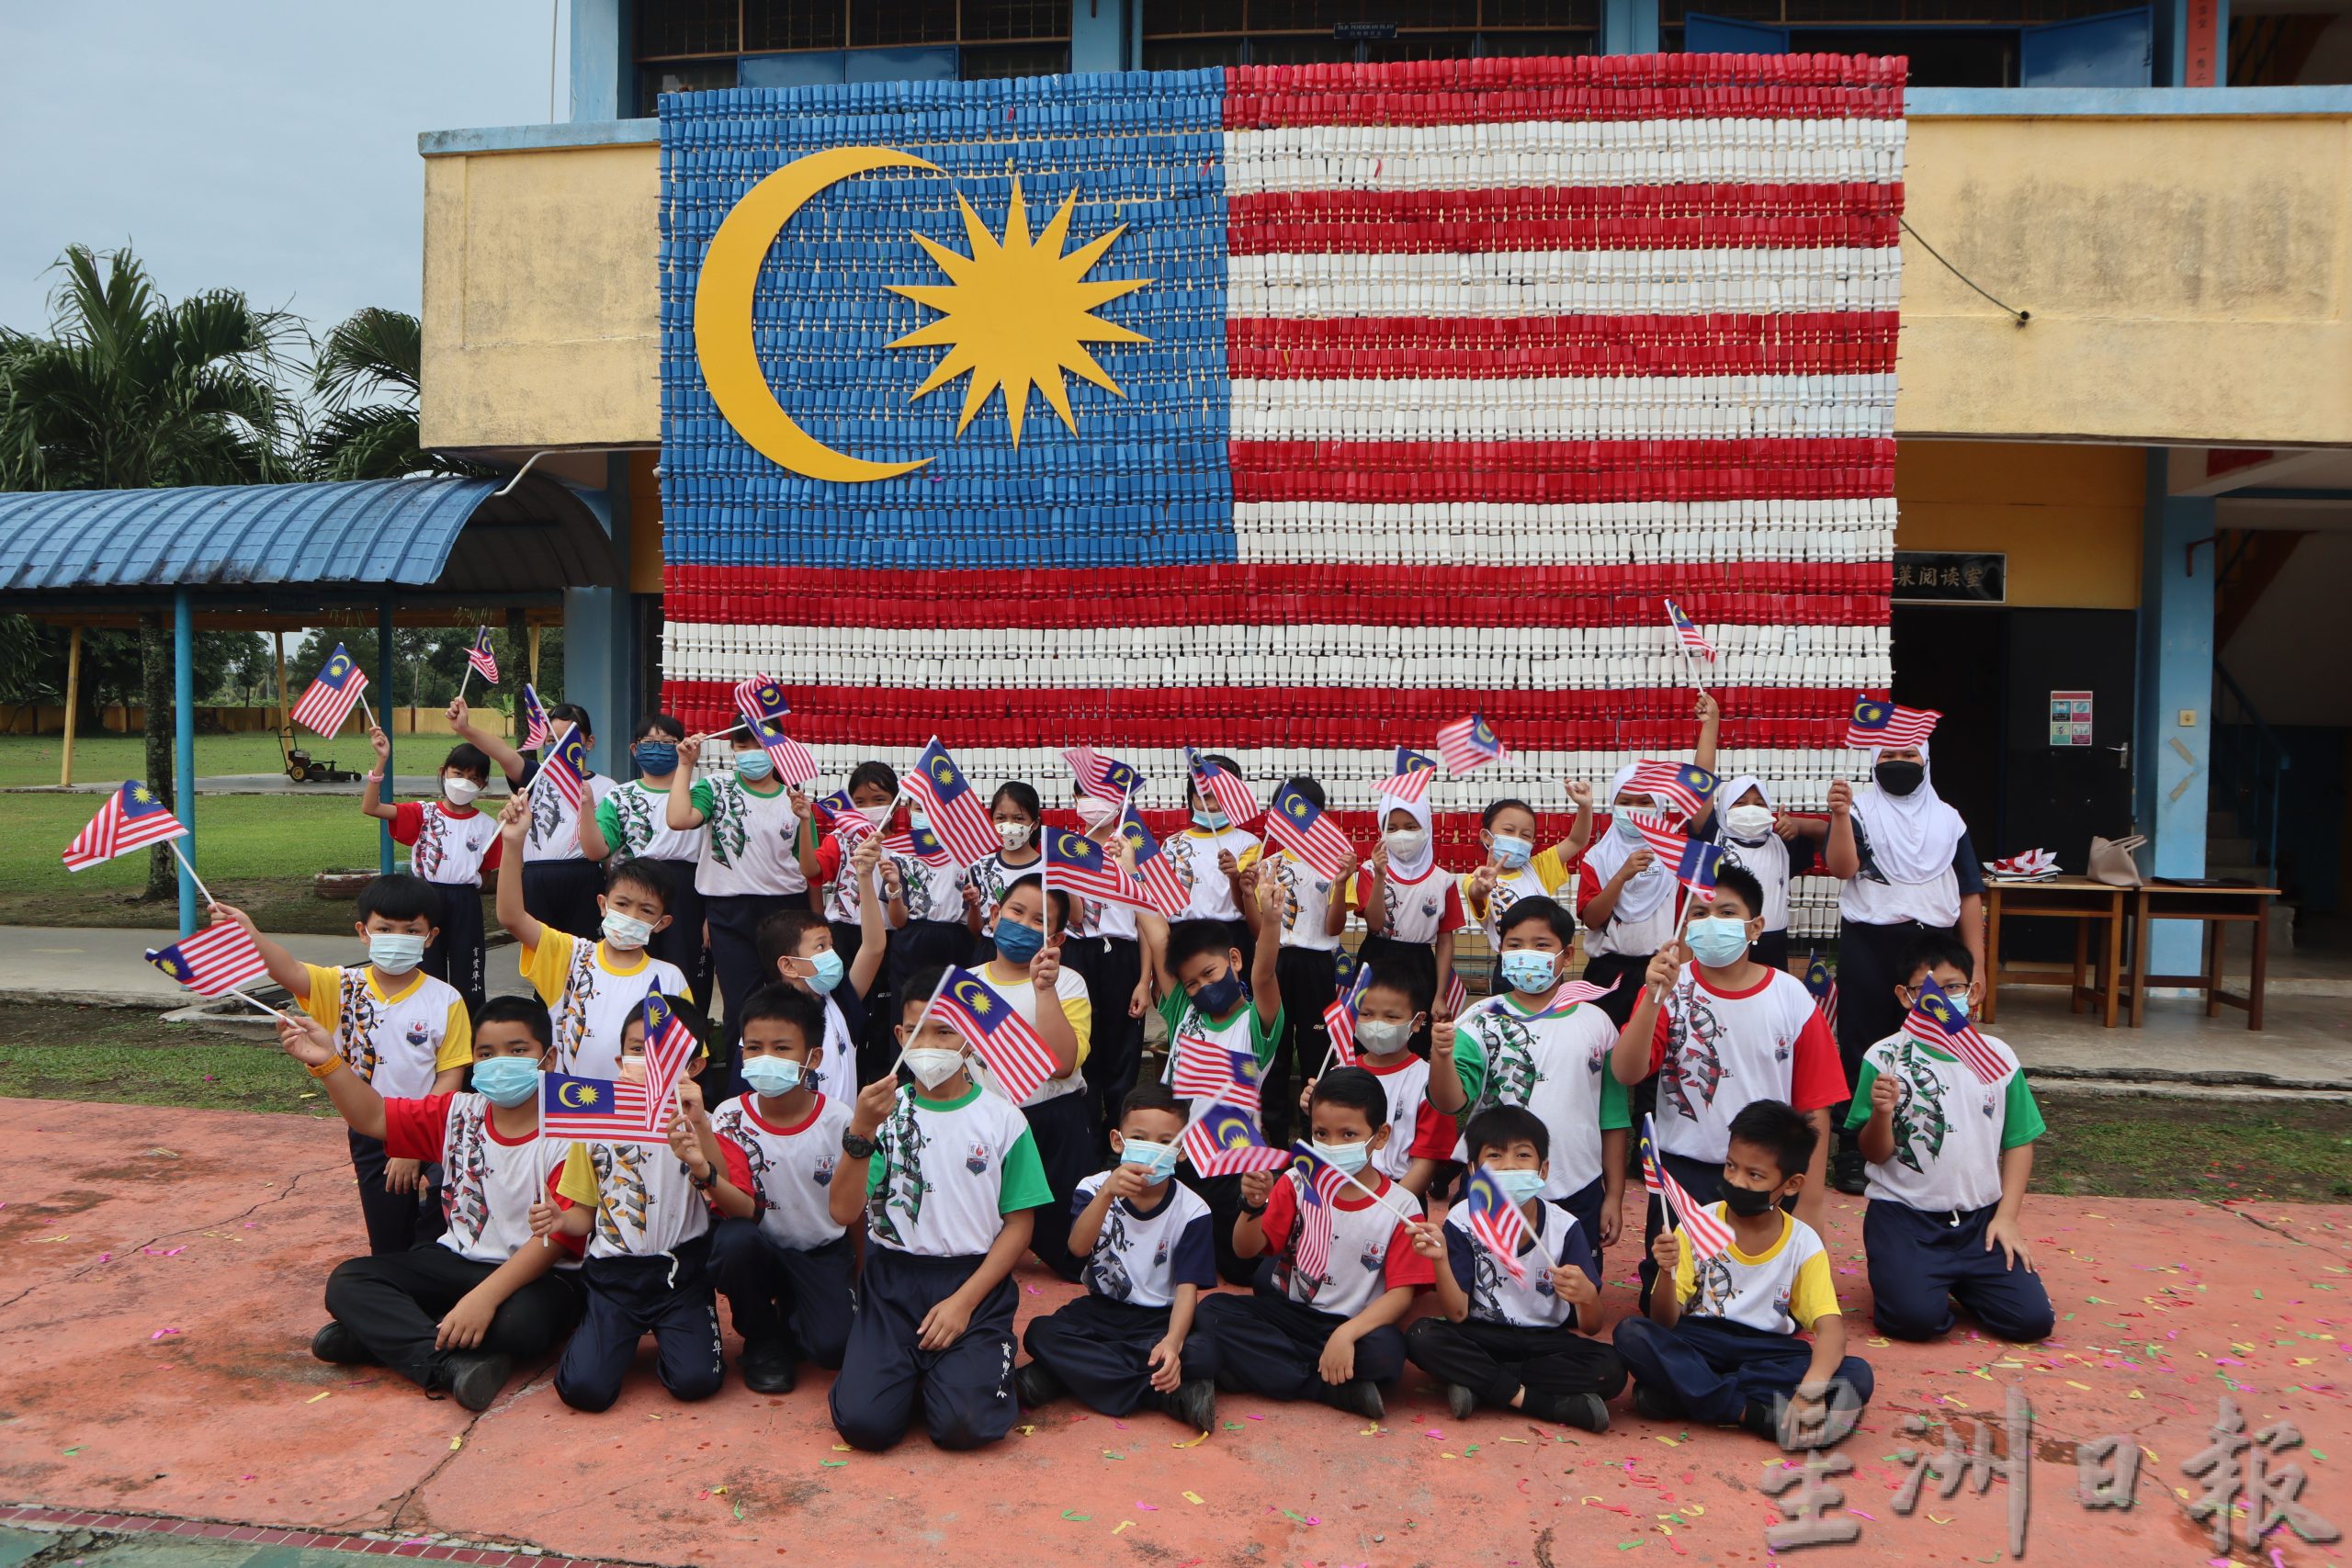 关丹育贤华小约300名师生，使用近千个塑料益生菌瓶子，费时两周，制作出10公尺乘14公尺的巨型国旗，让学生感受绿色国庆日，别具意义。